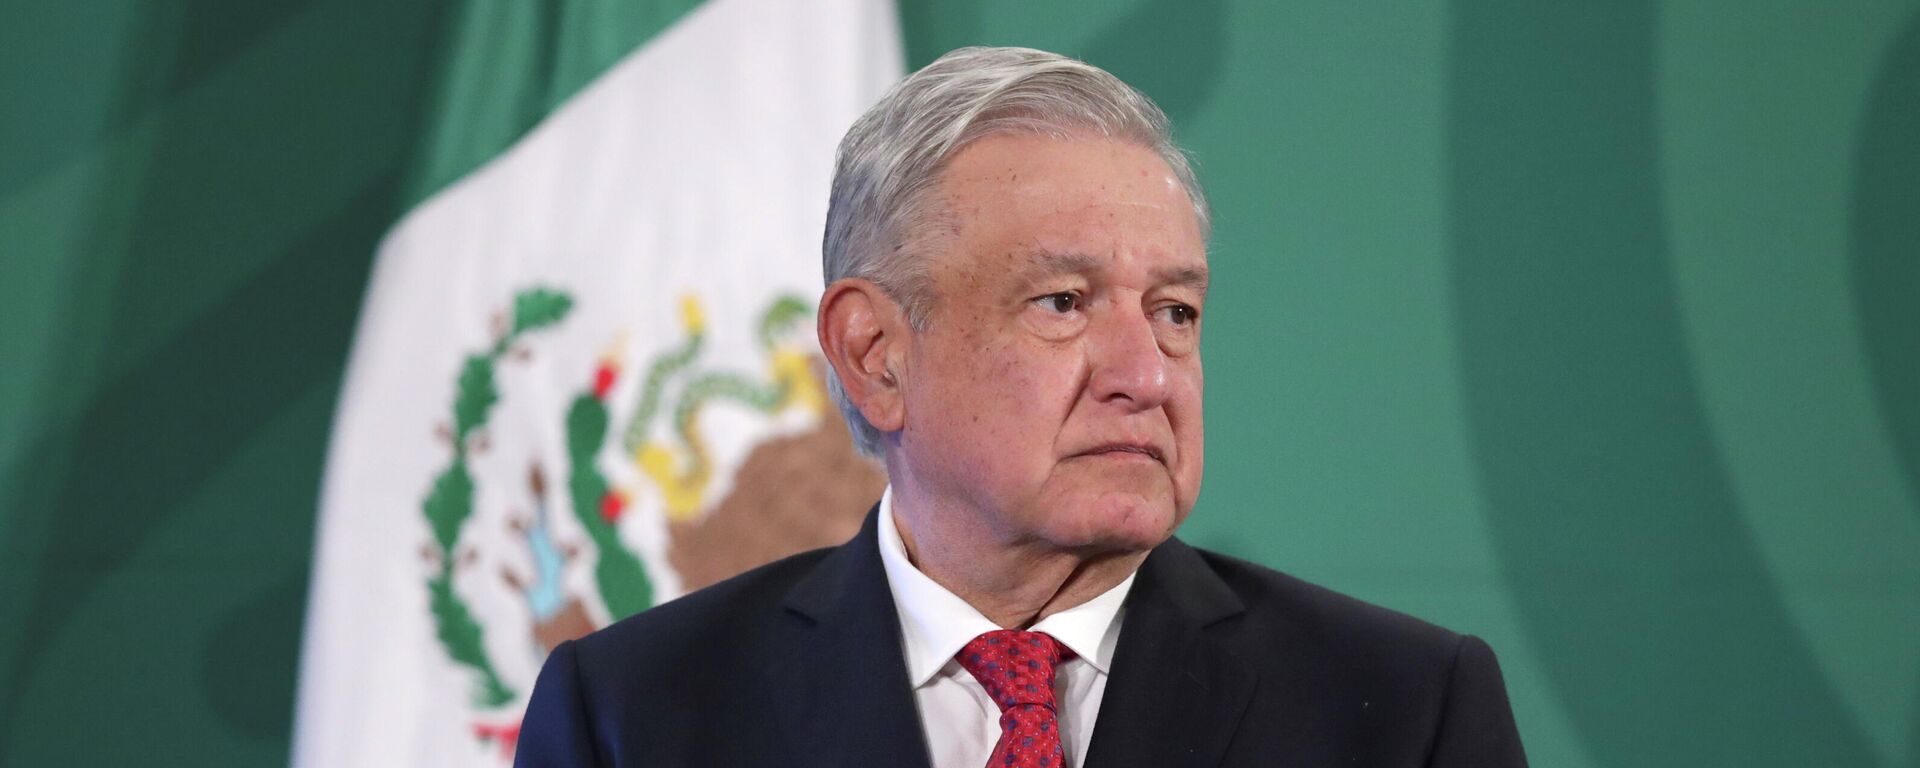 Andrés Manuel López Obrador, presidente de México - Sputnik Mundo, 1920, 26.02.2021